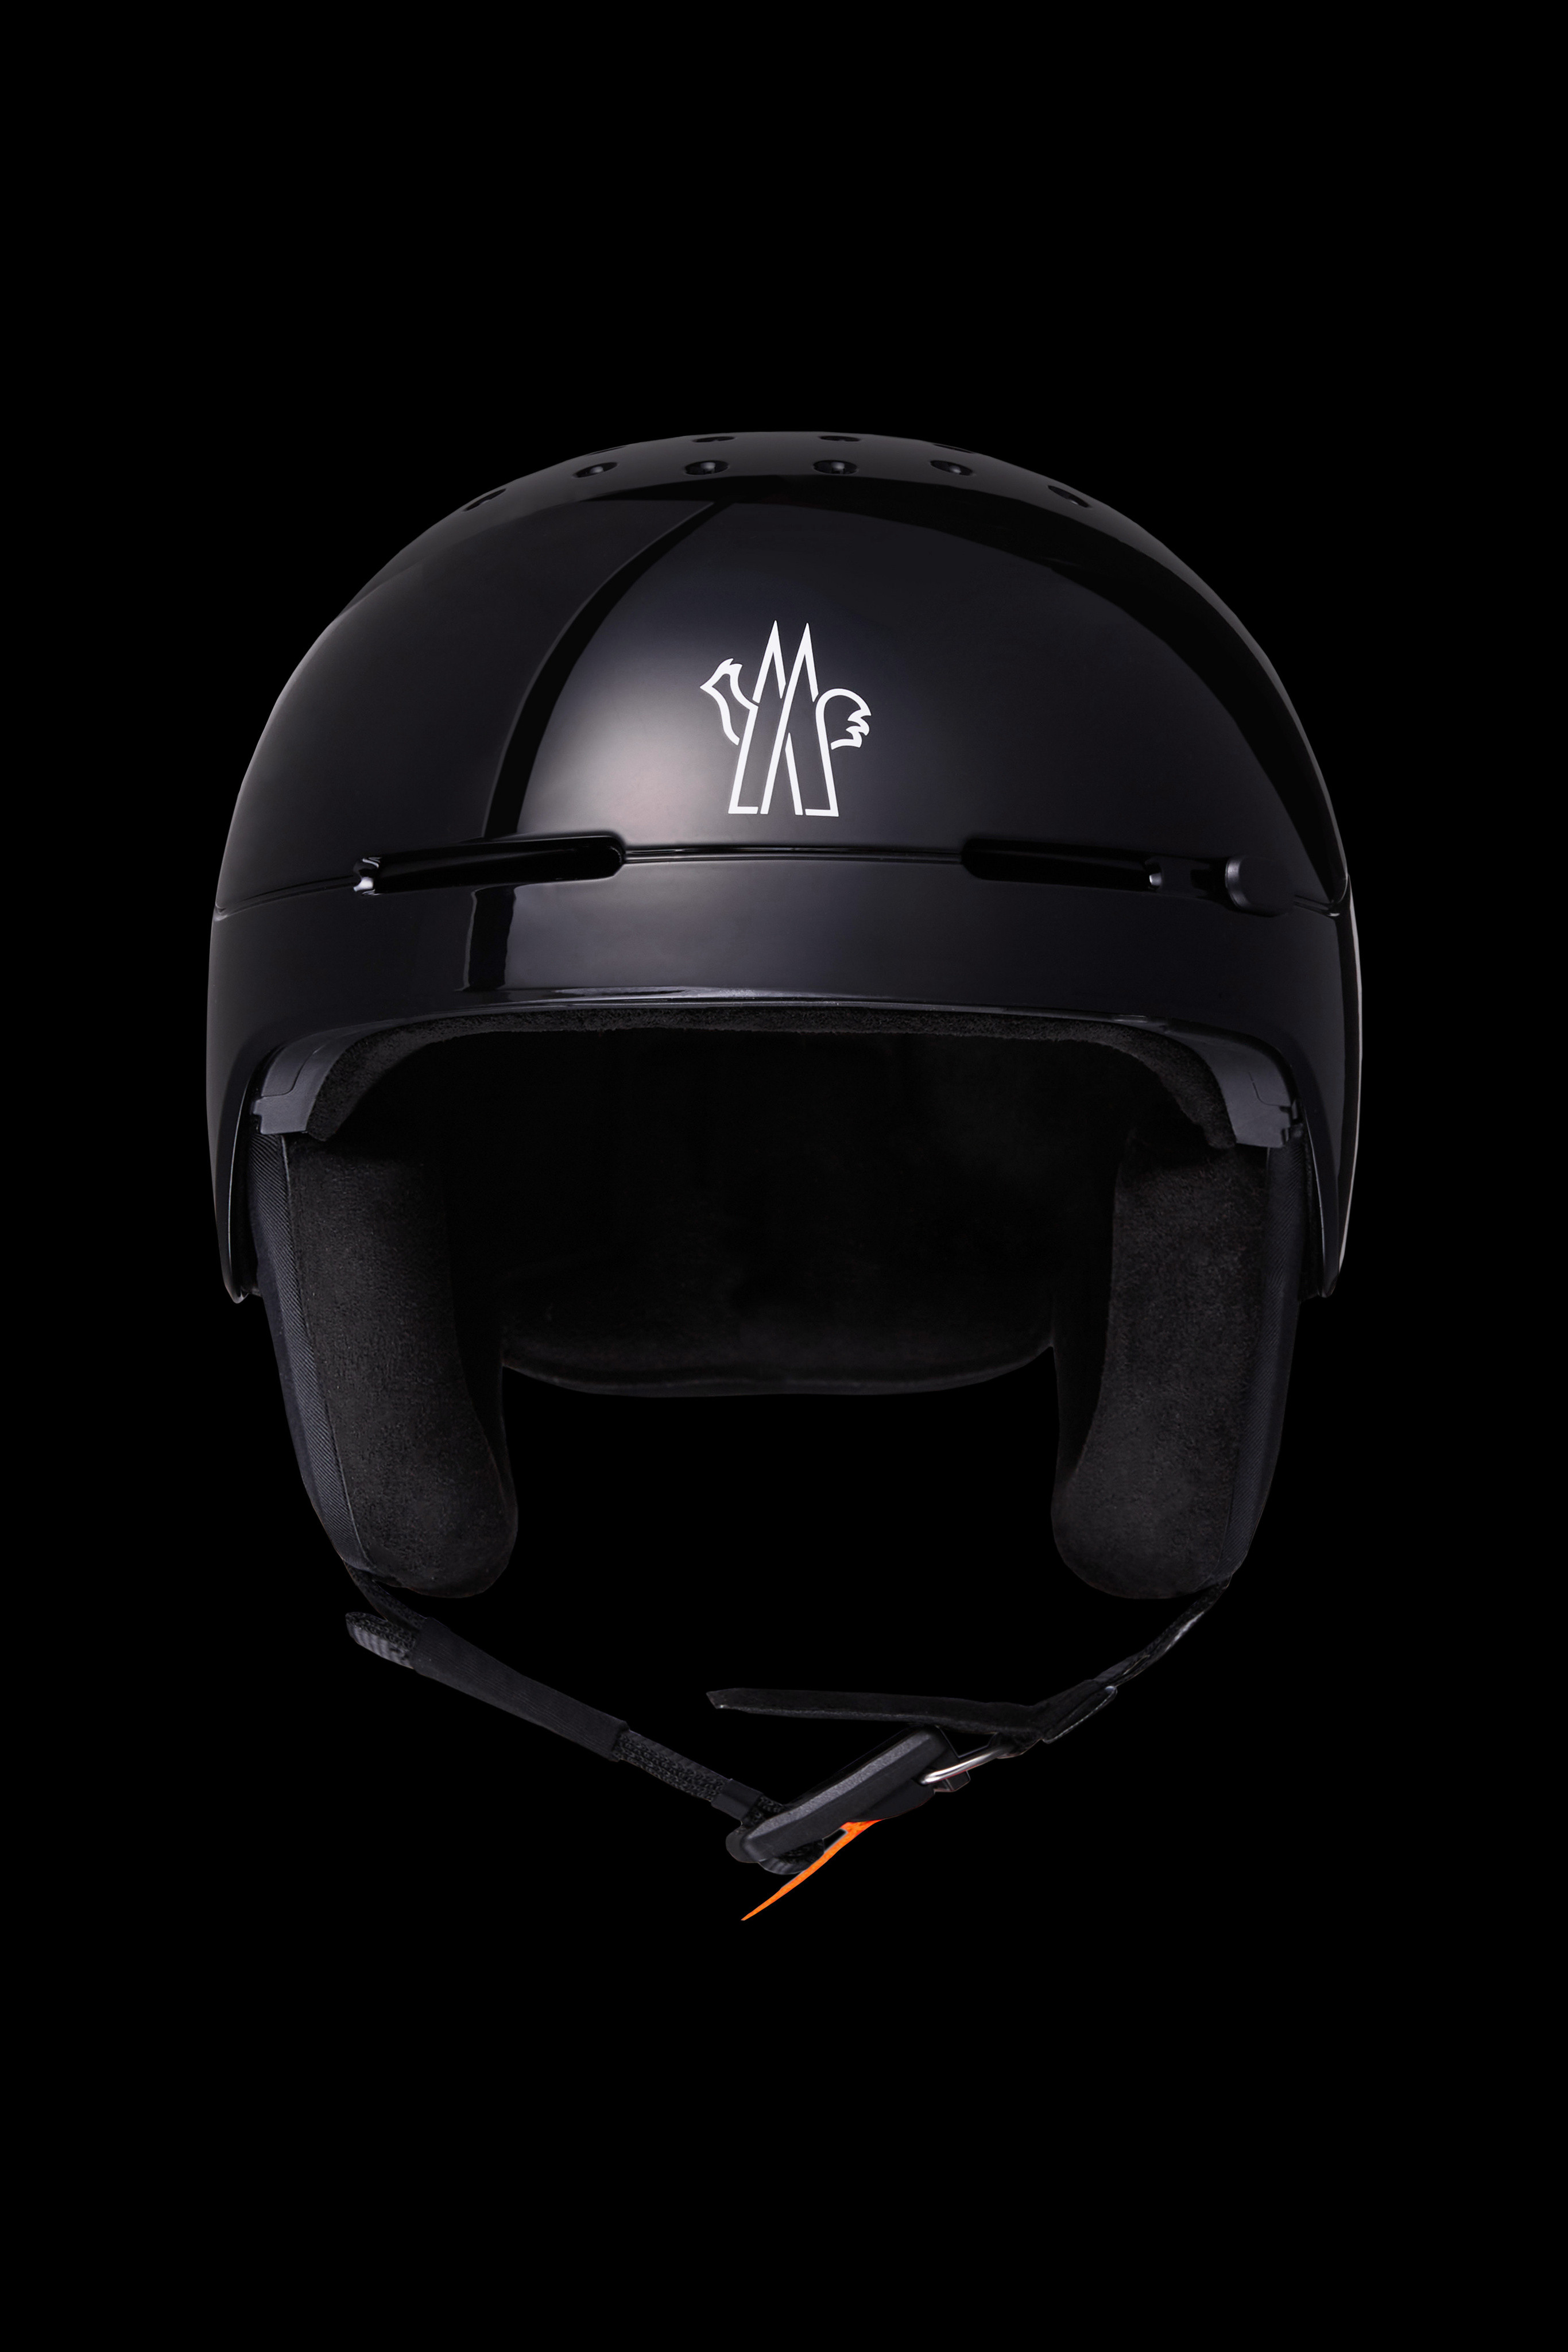 Black Logo Ski Helmet - Ski Helmets for Men | Moncler US